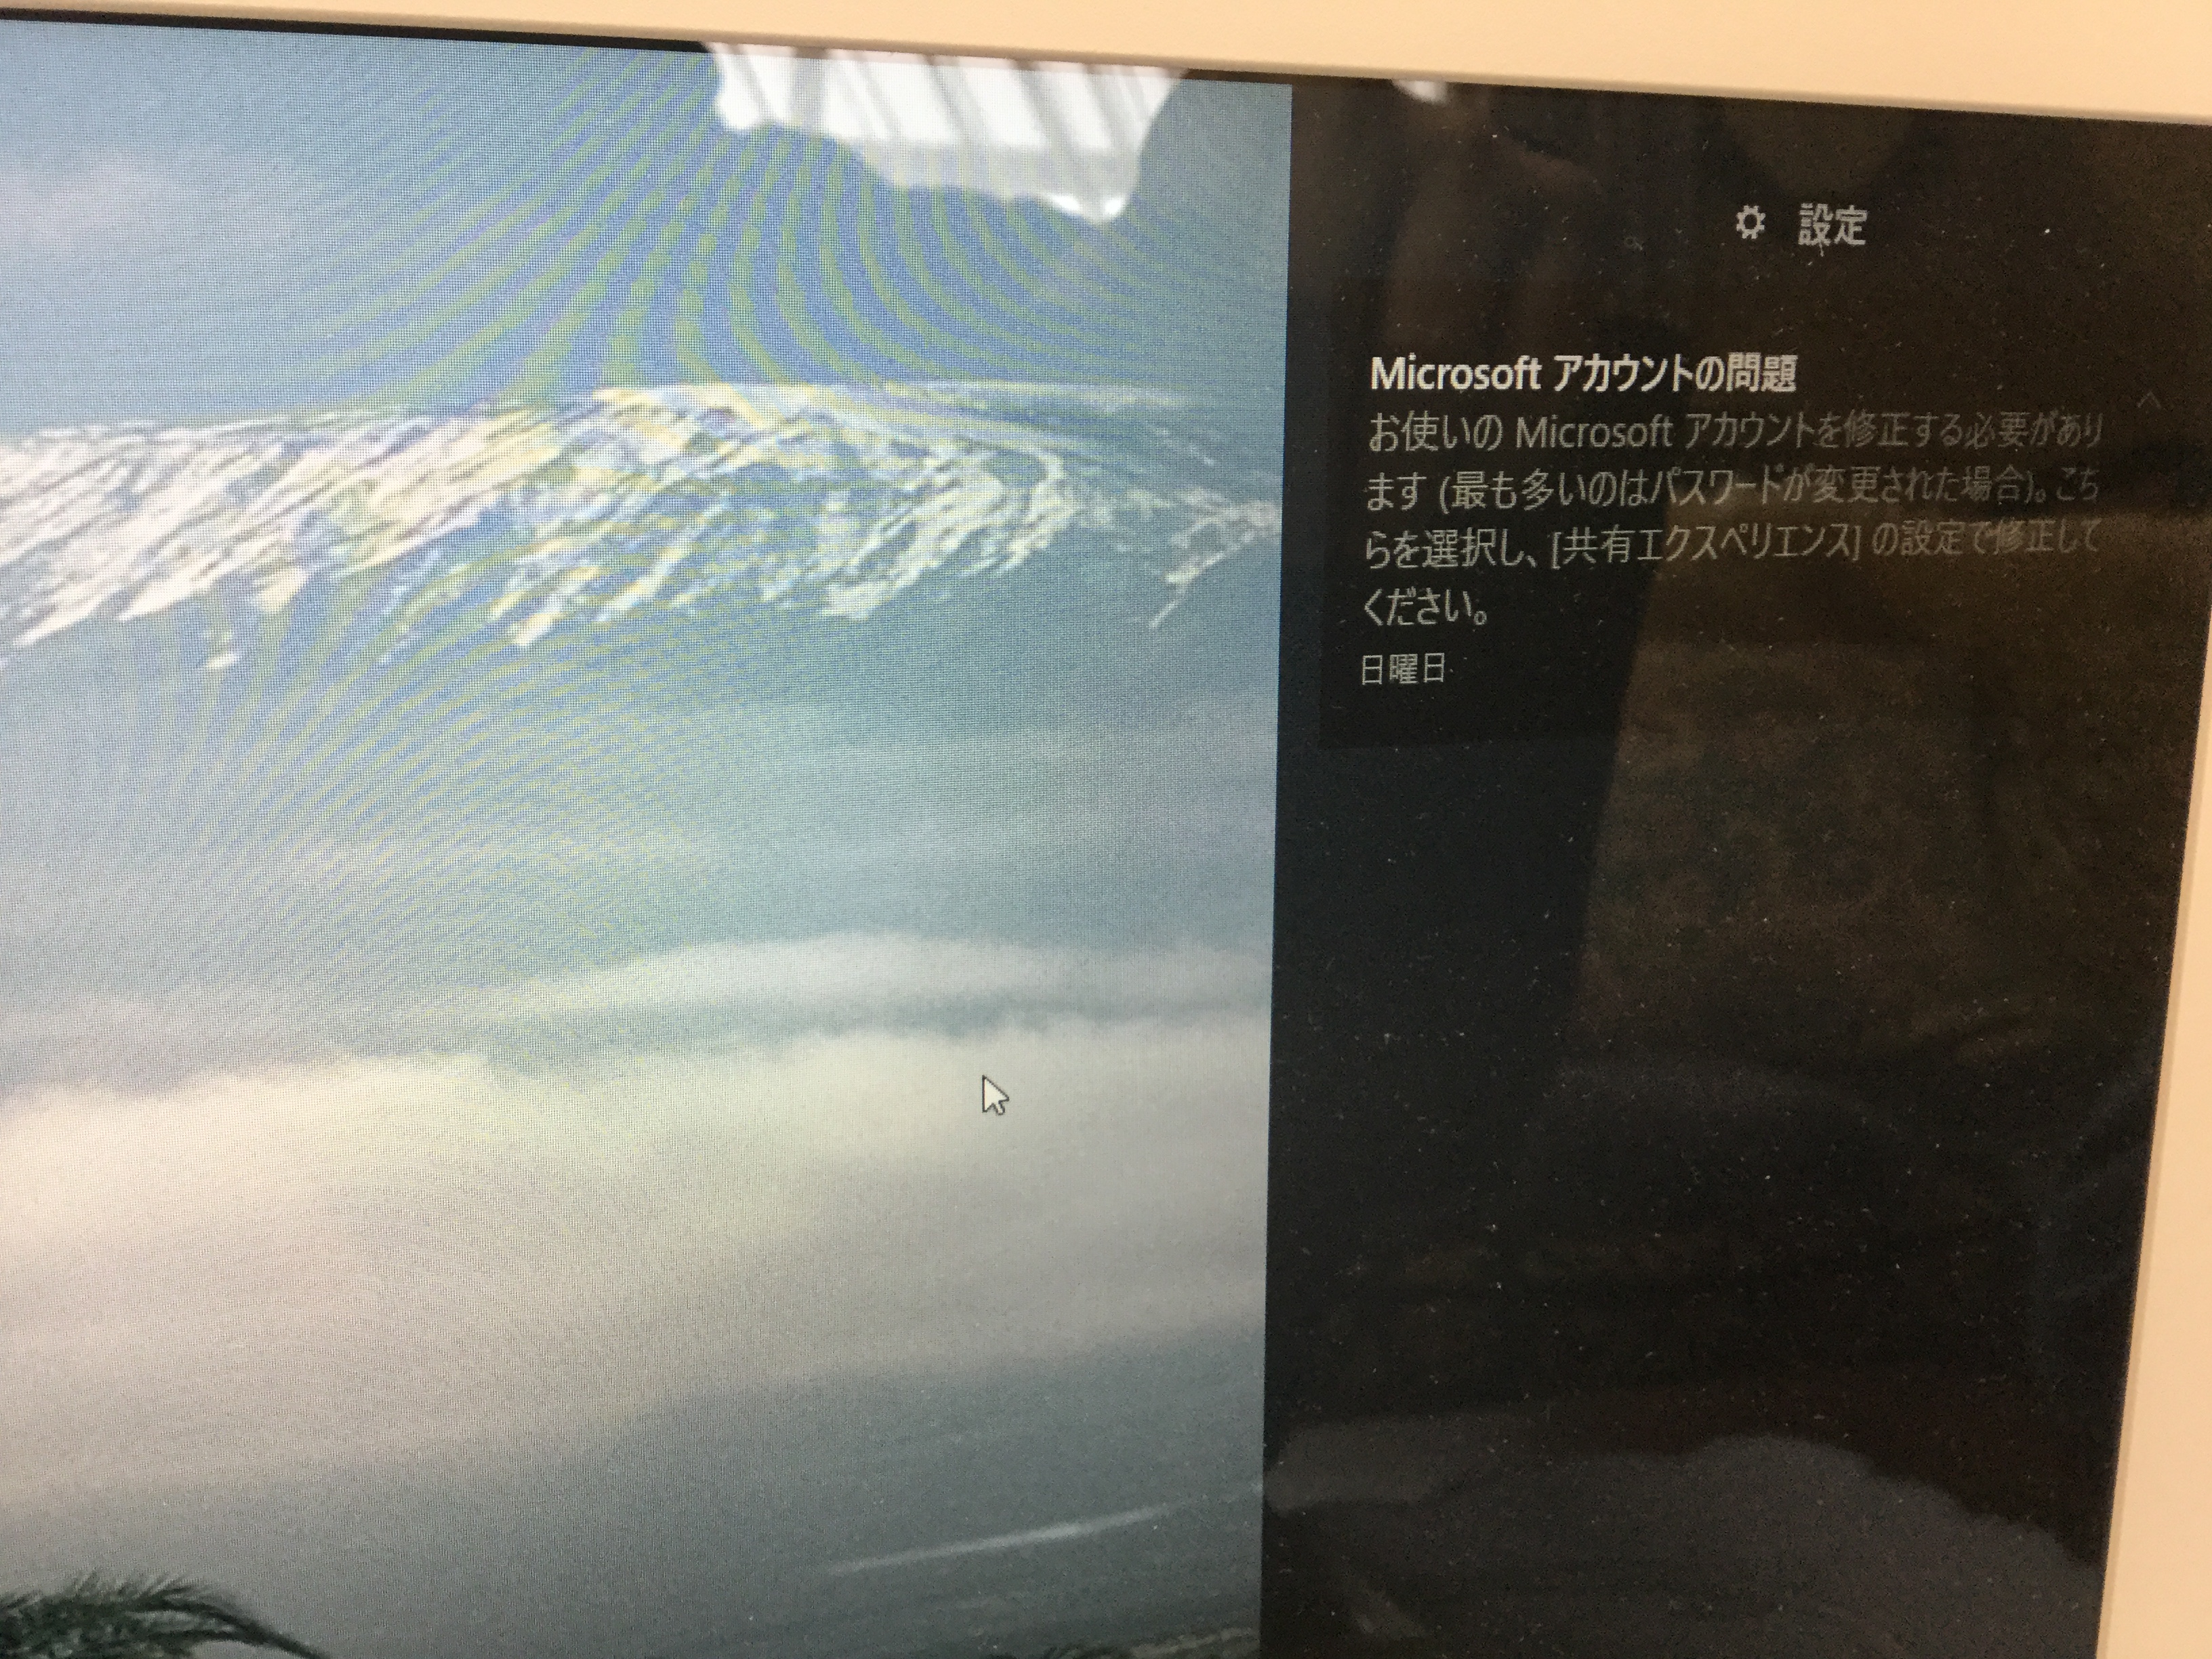 広島県竹原市 ノートパソコンの共有エクスペリエンスの通知が表示される／東芝 Windows 10のイメージ